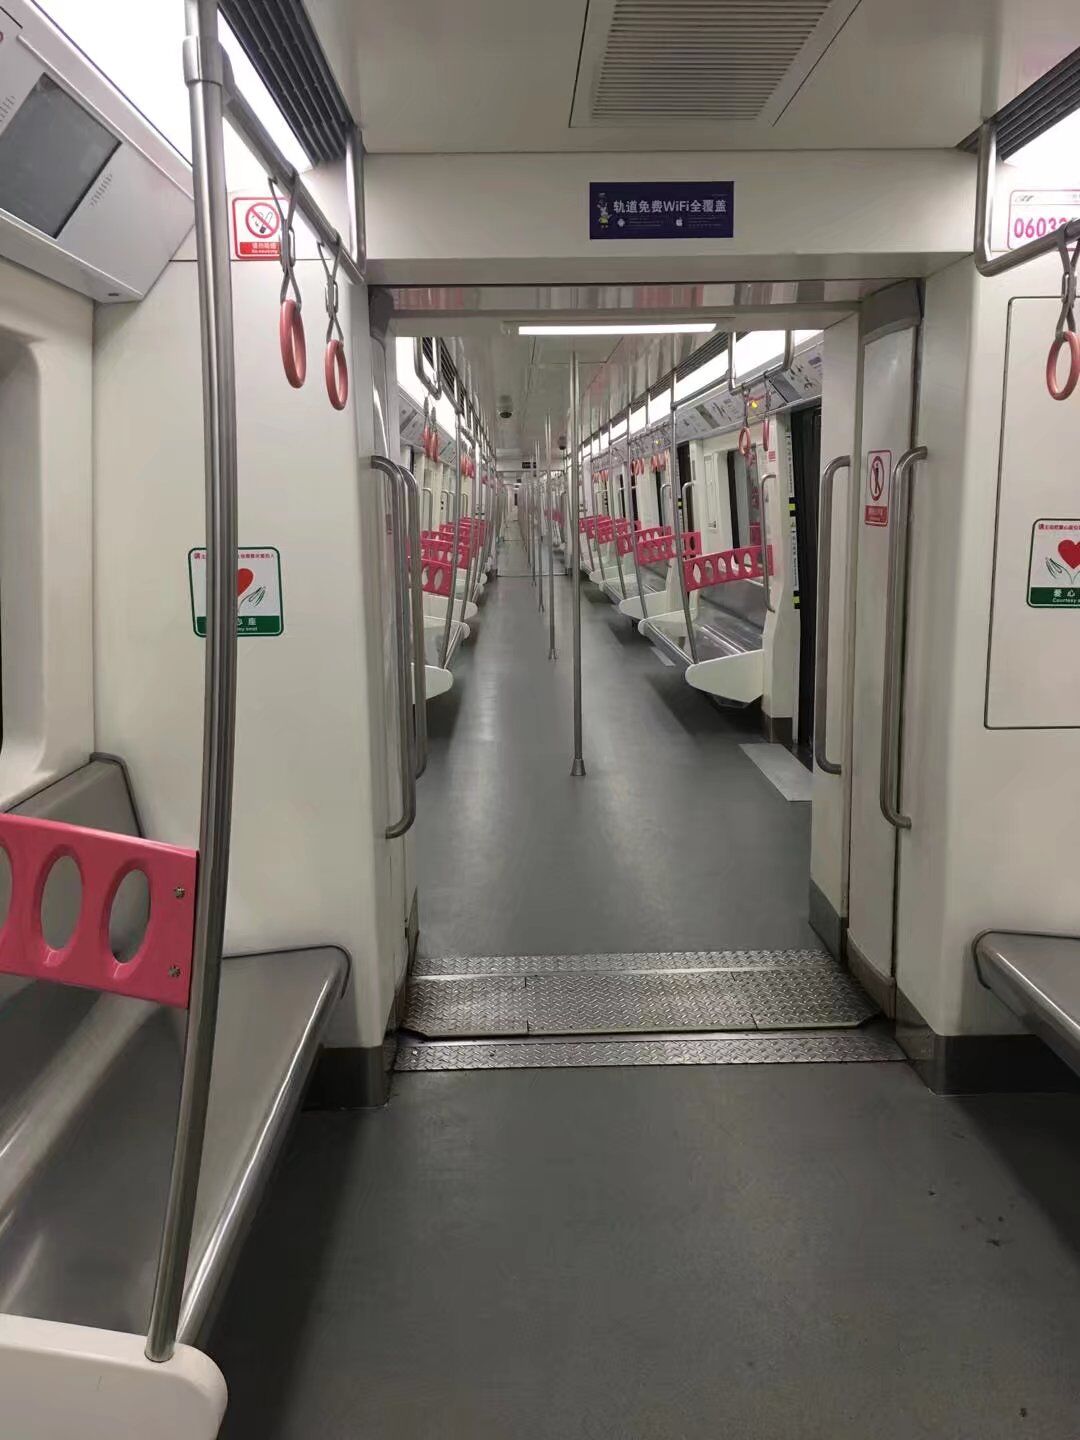 北京地铁今年开通线路条段数系历年最多